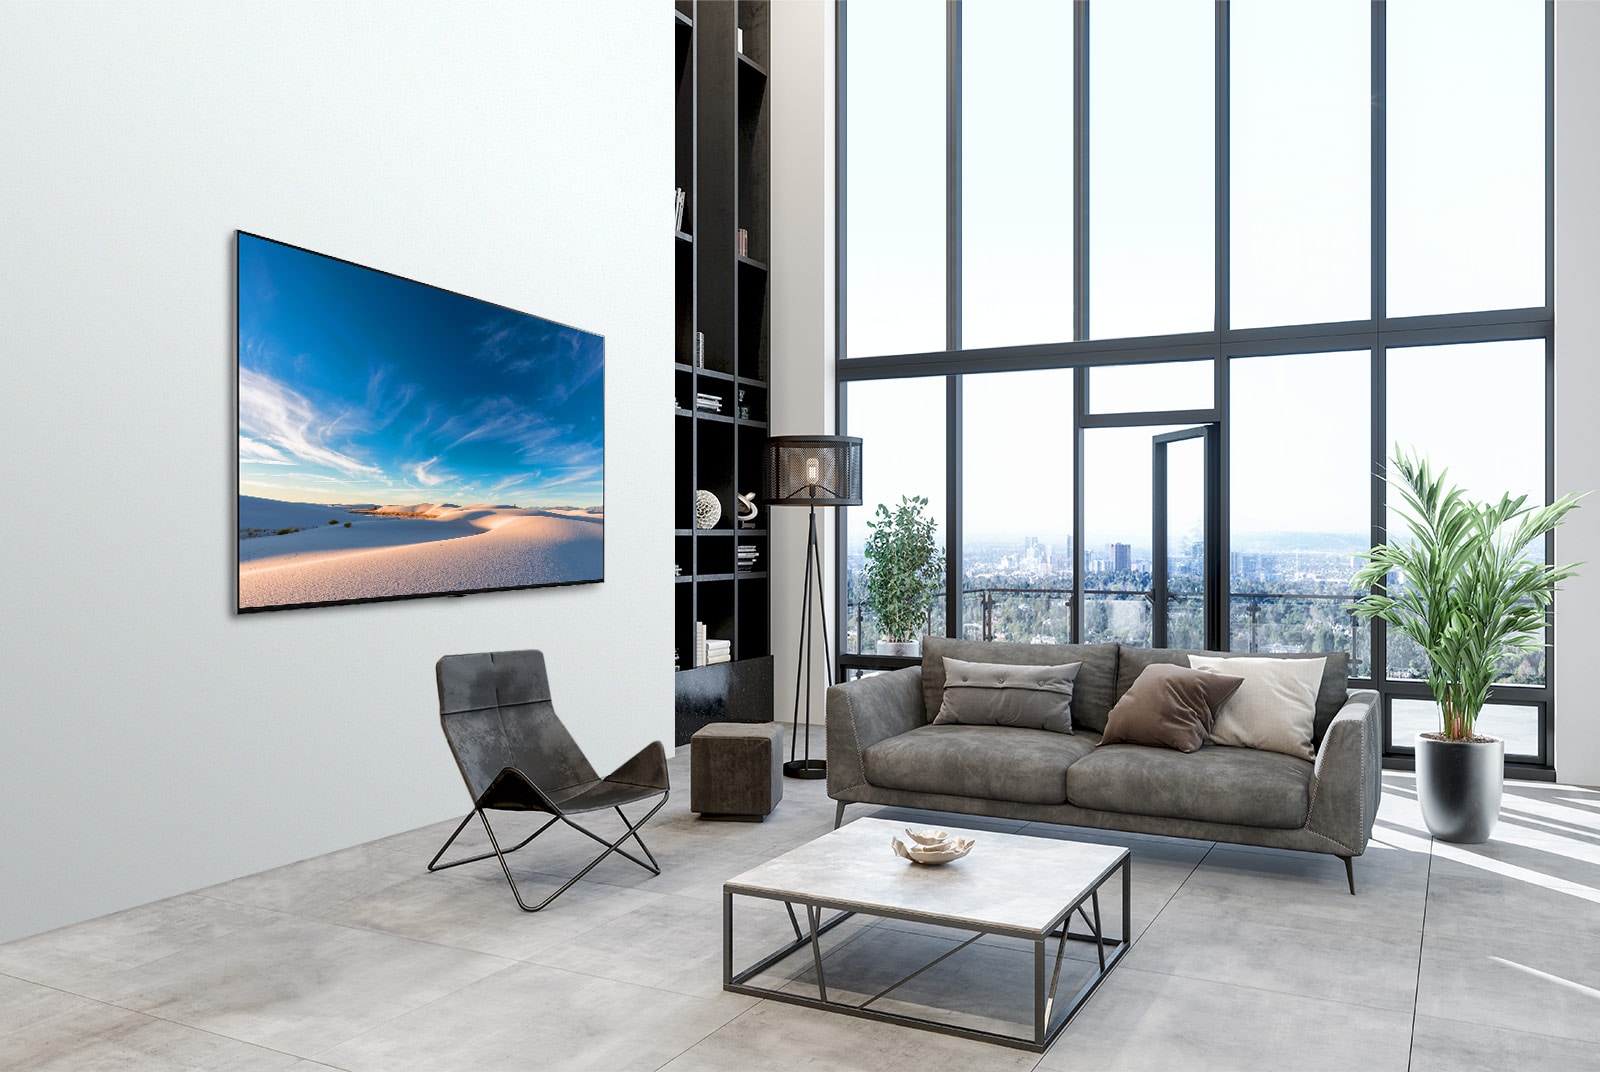 Tivi LG QNED áp sát tường trong không gian nội thất hiện đại.